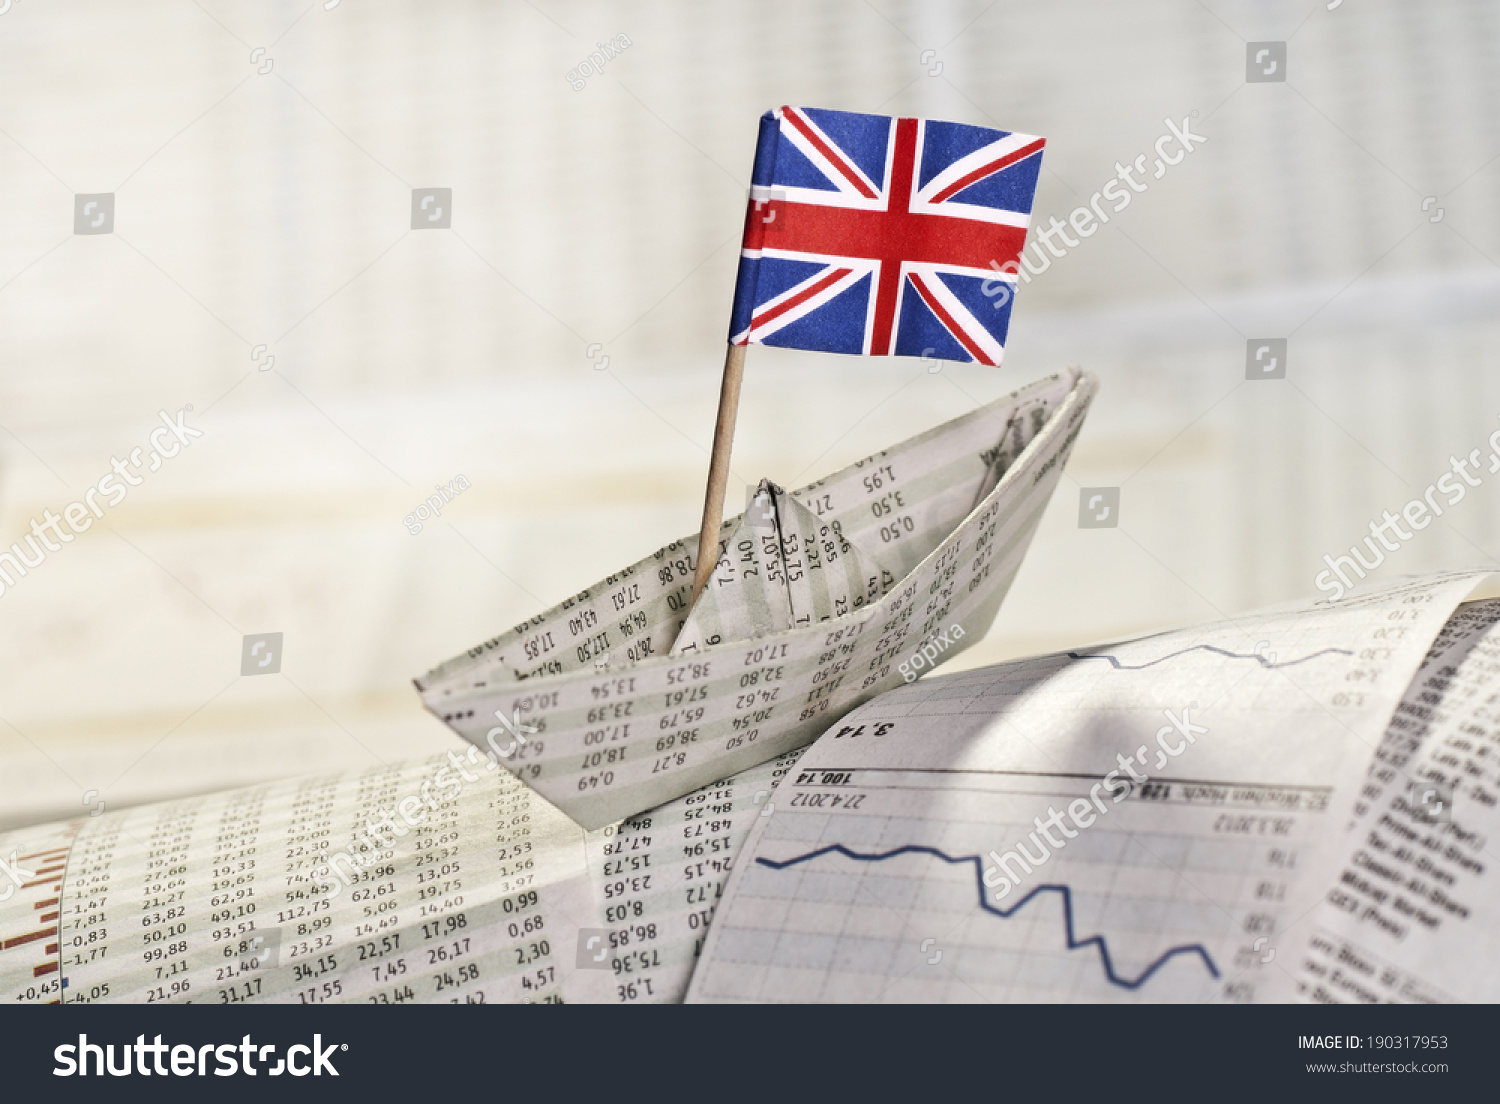 انعاش الاقتصاد البريطاني بتوفير فرص العمل وتخفيض الضريبة